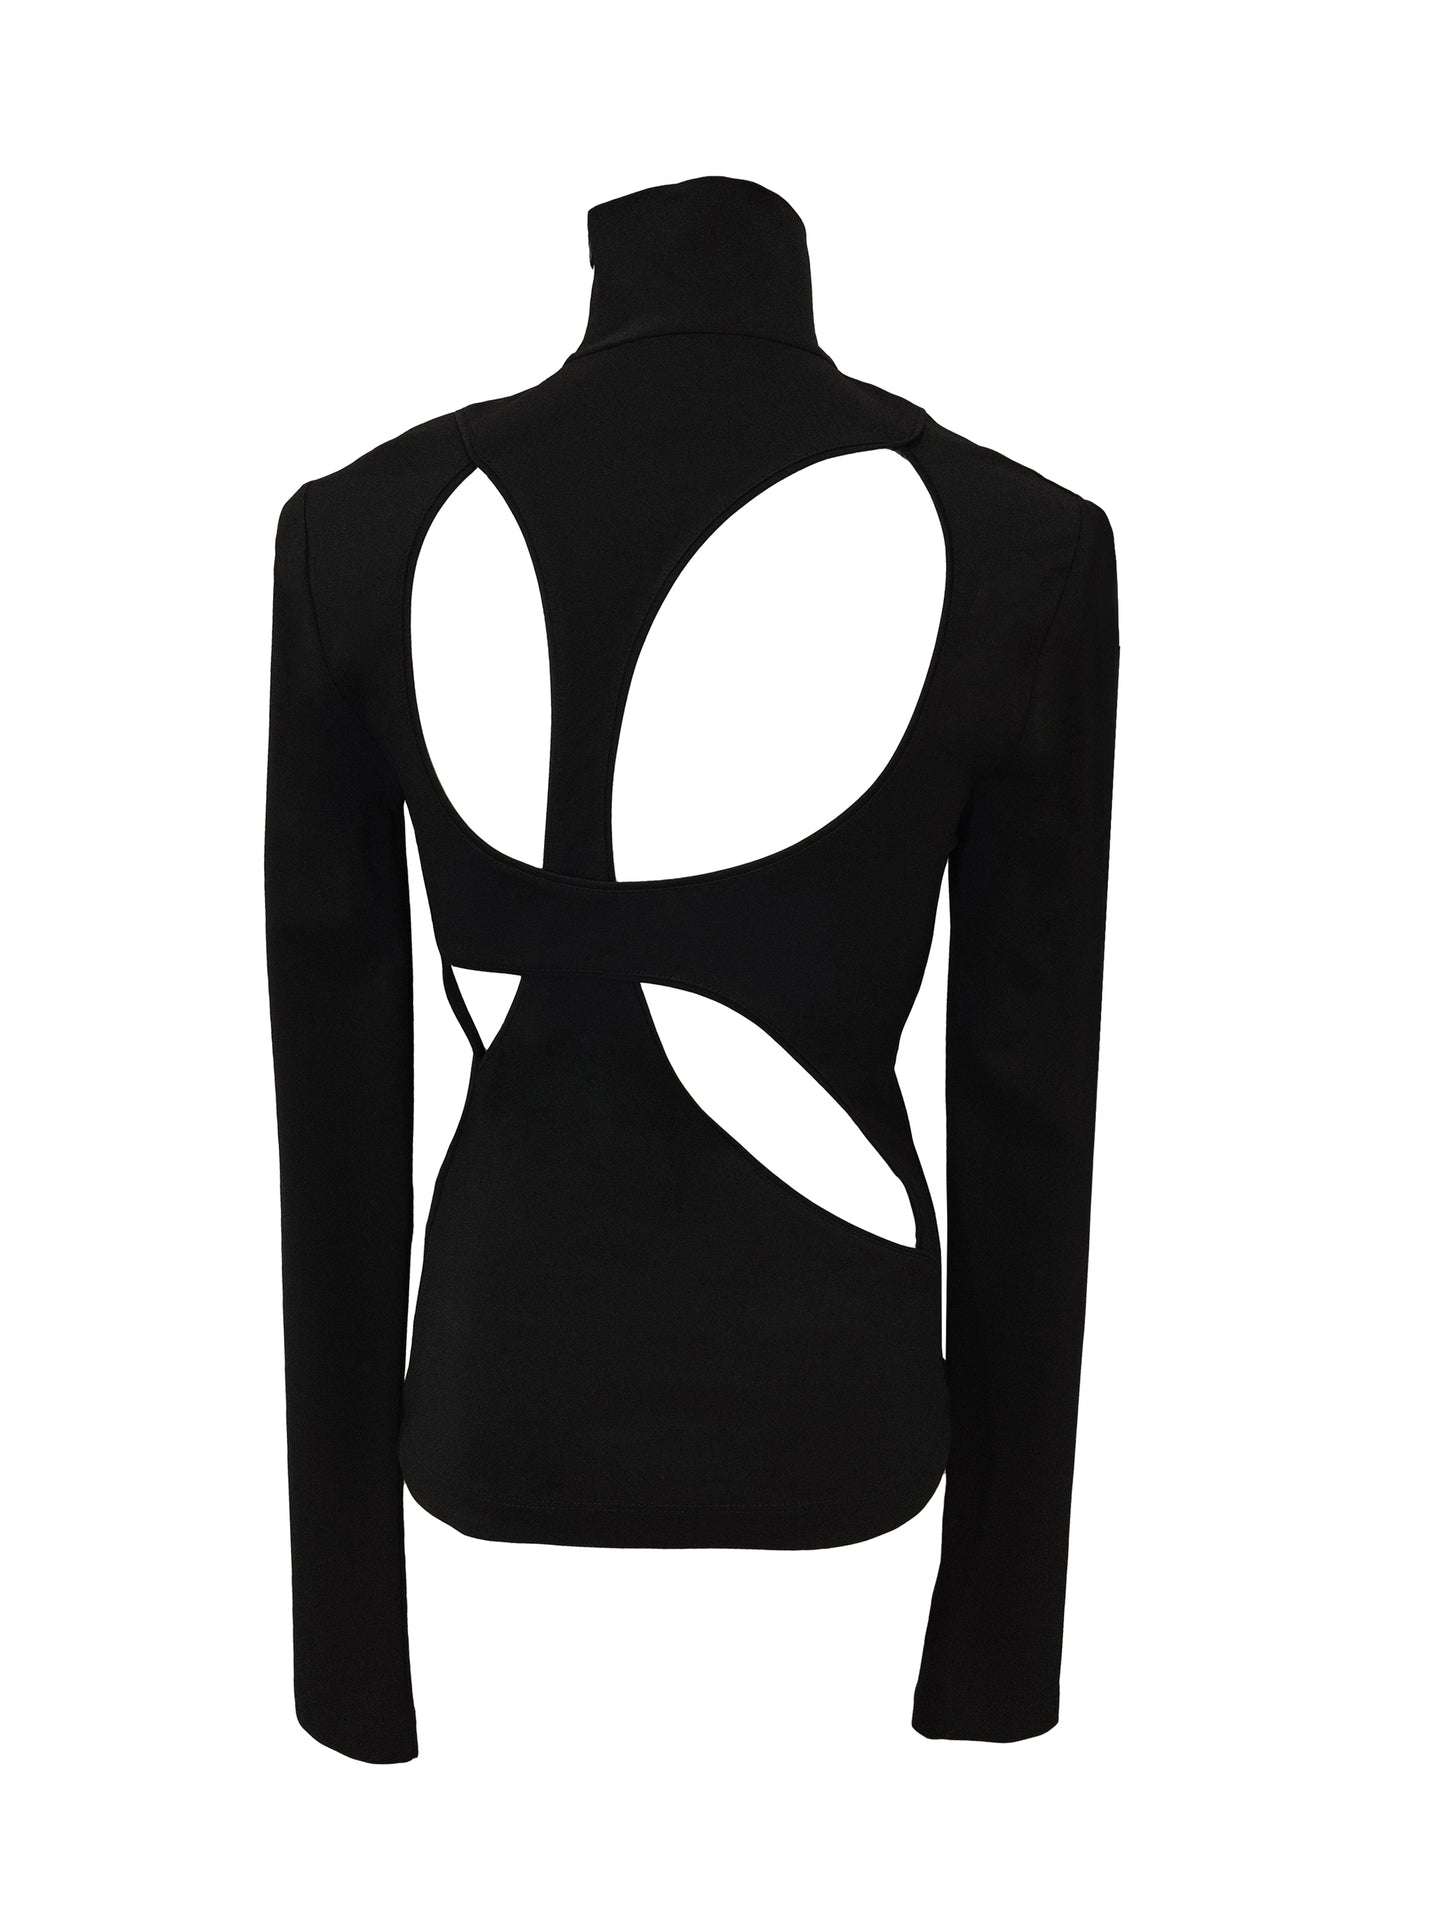 schwarzes Top mit hohem Halsausschnitt, Marke Givenchy, asymmetrische Details am Rücken